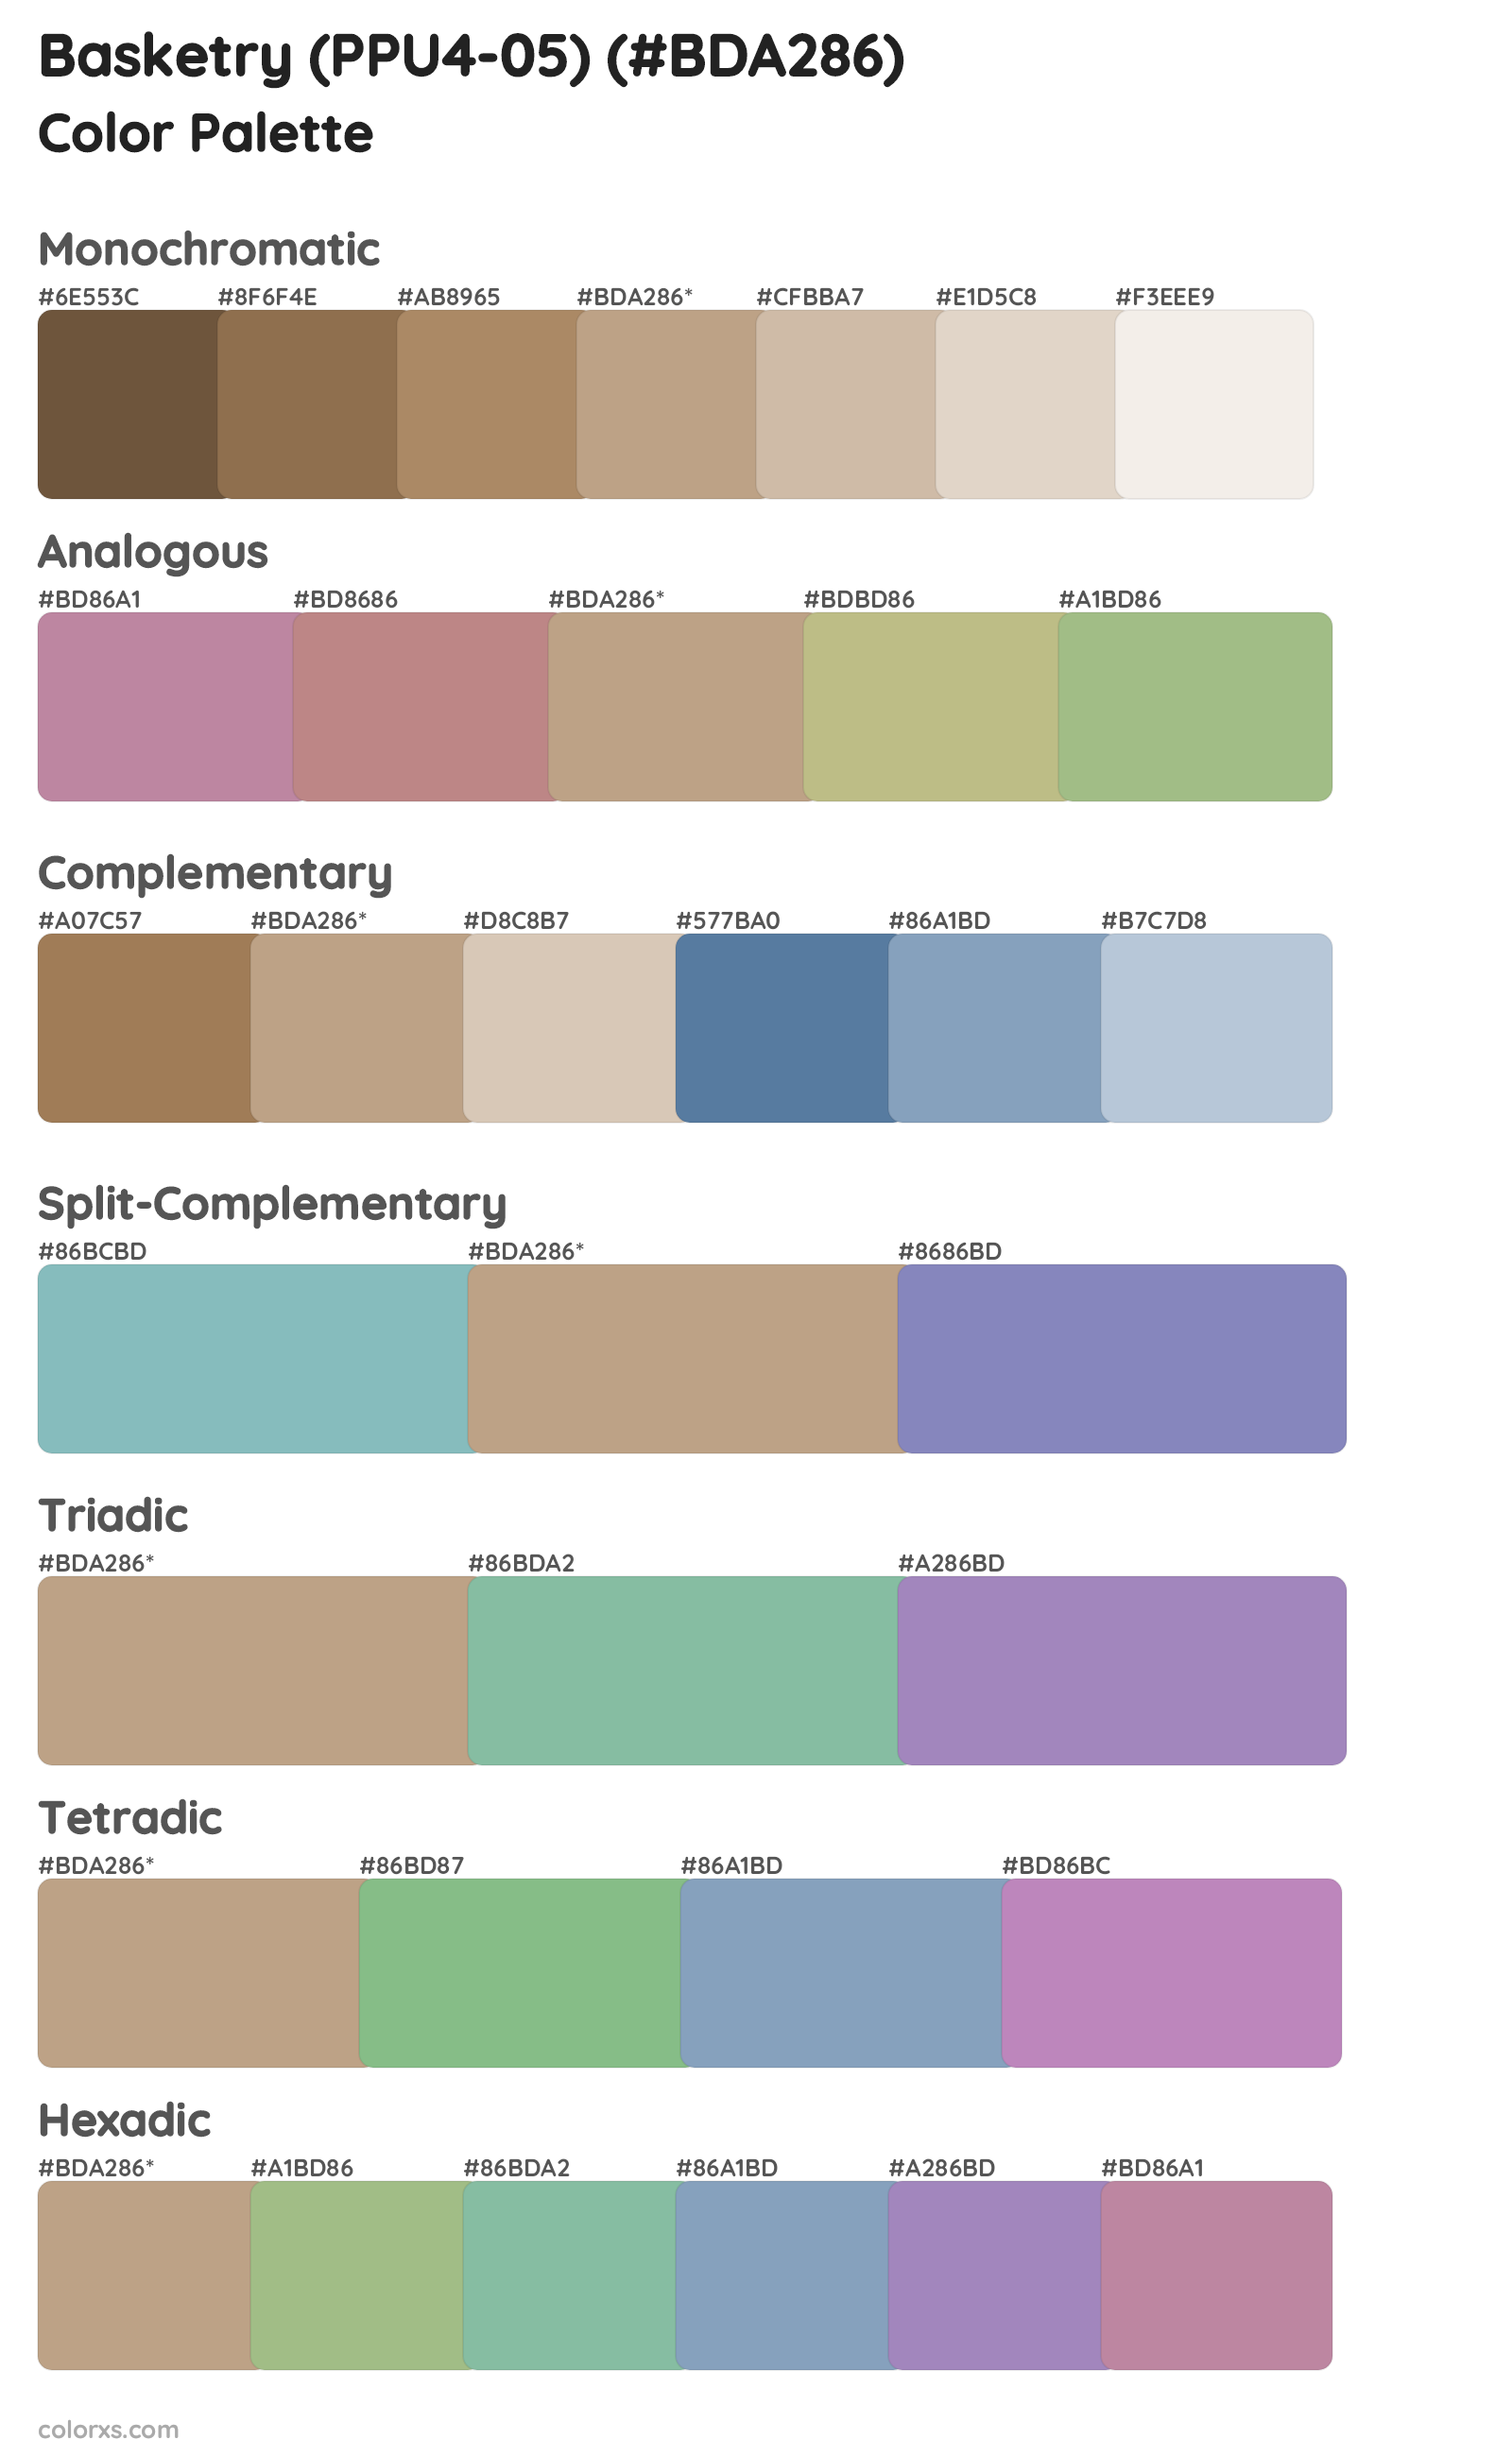 Basketry (PPU4-05) Color Scheme Palettes